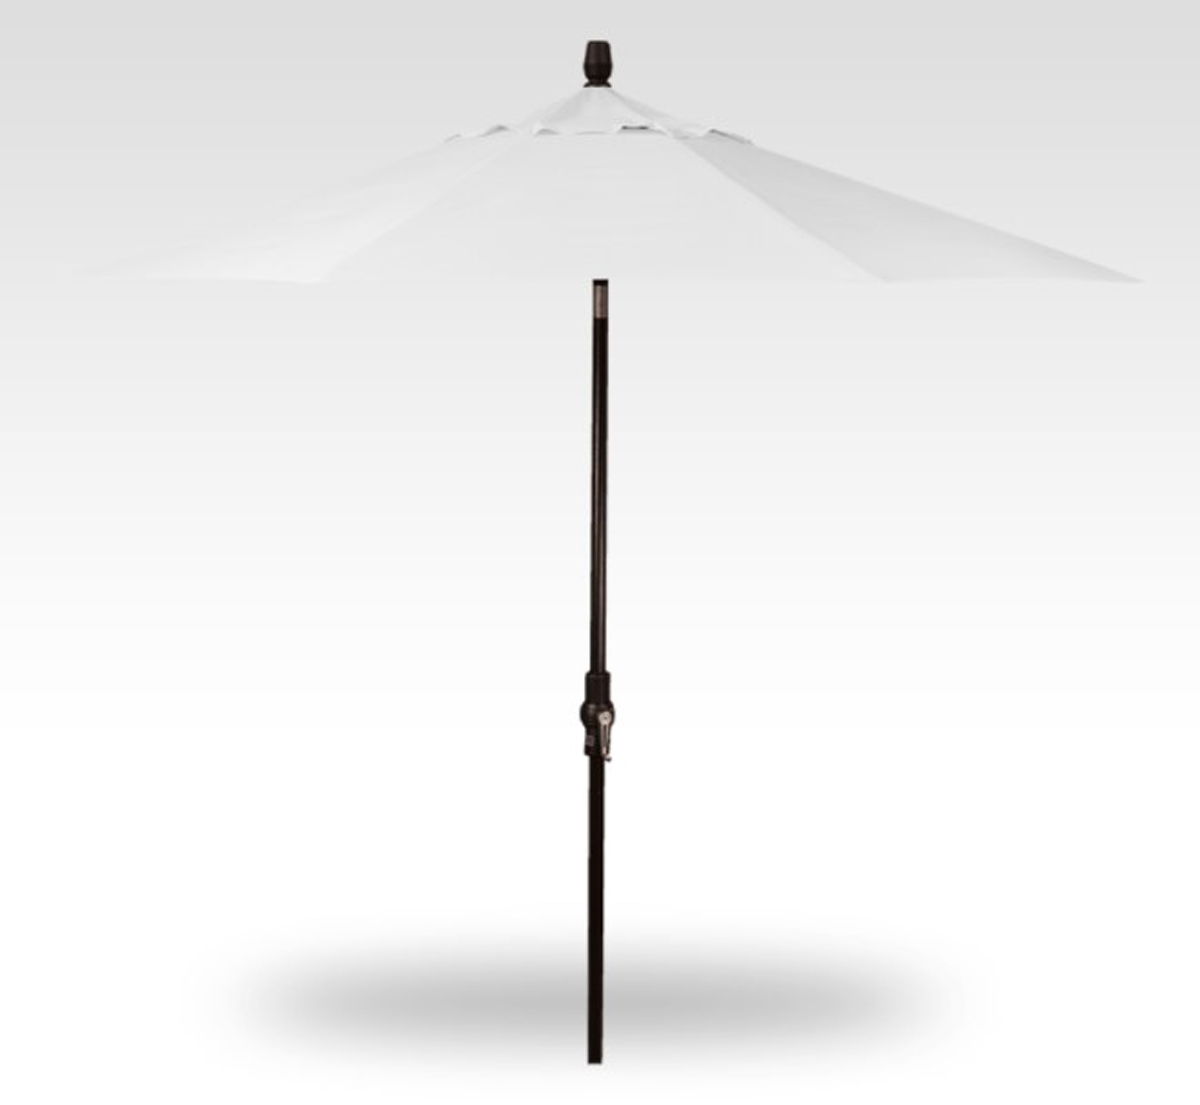 9 natural collar tilt umbrella – black frame product image